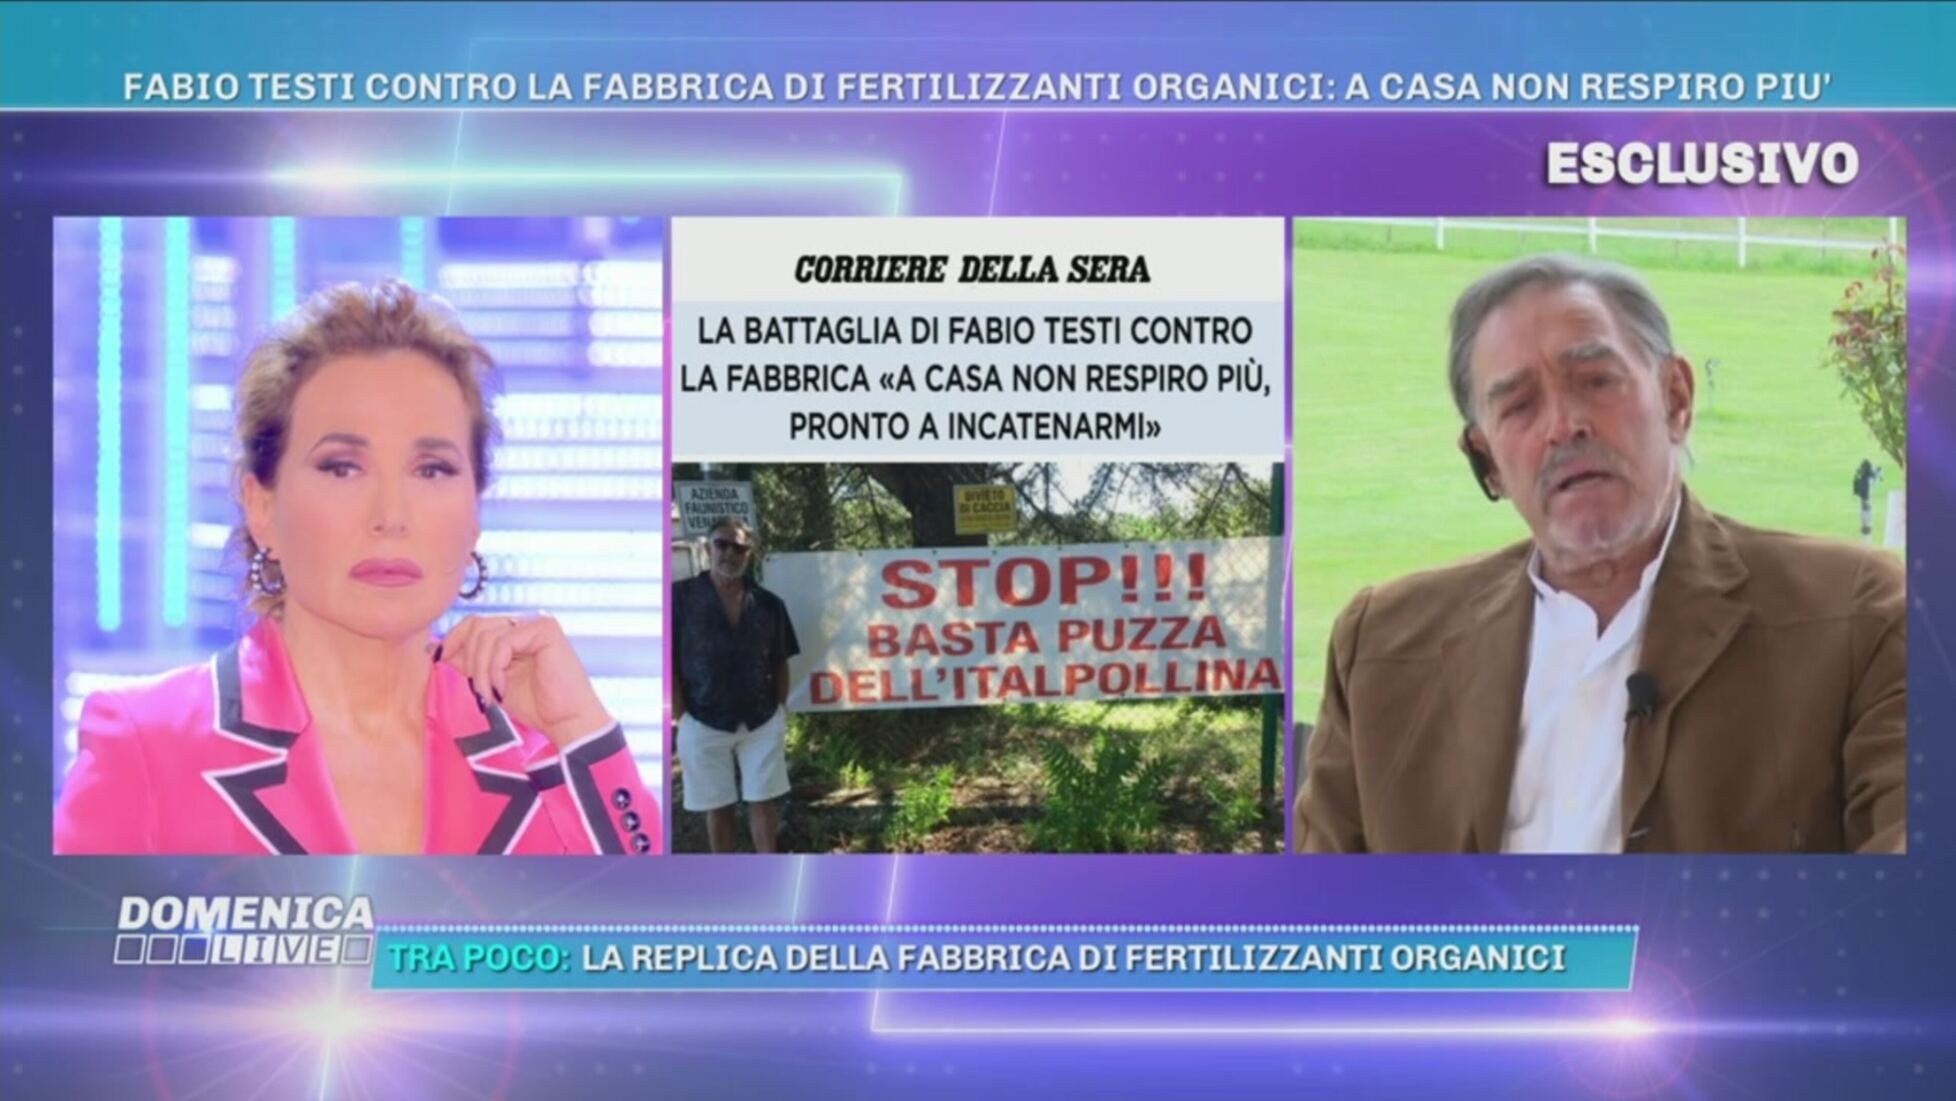 Fabio Testi a Domenica Live: "La situazione è grave"